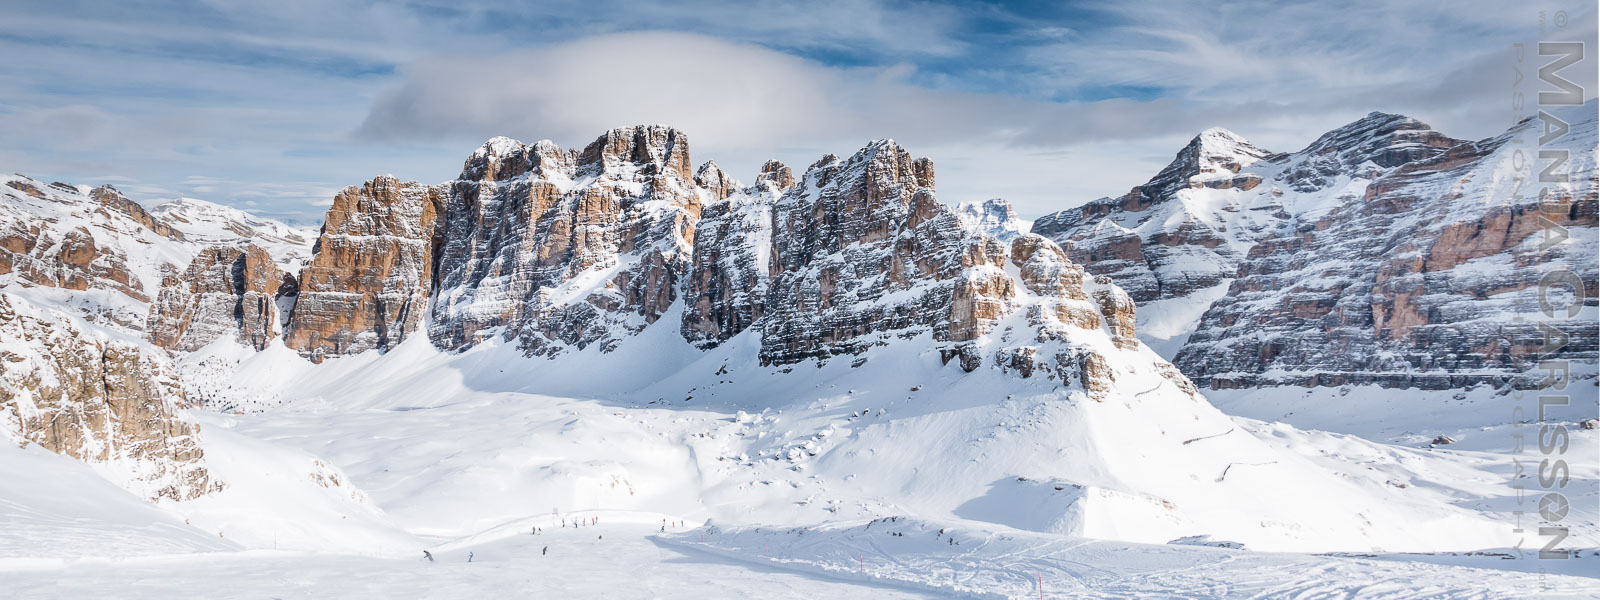 Dolomiten - Lagazuoi - Fanes und Tofane im Schnee - Panoramafoto © Manja Carlsson